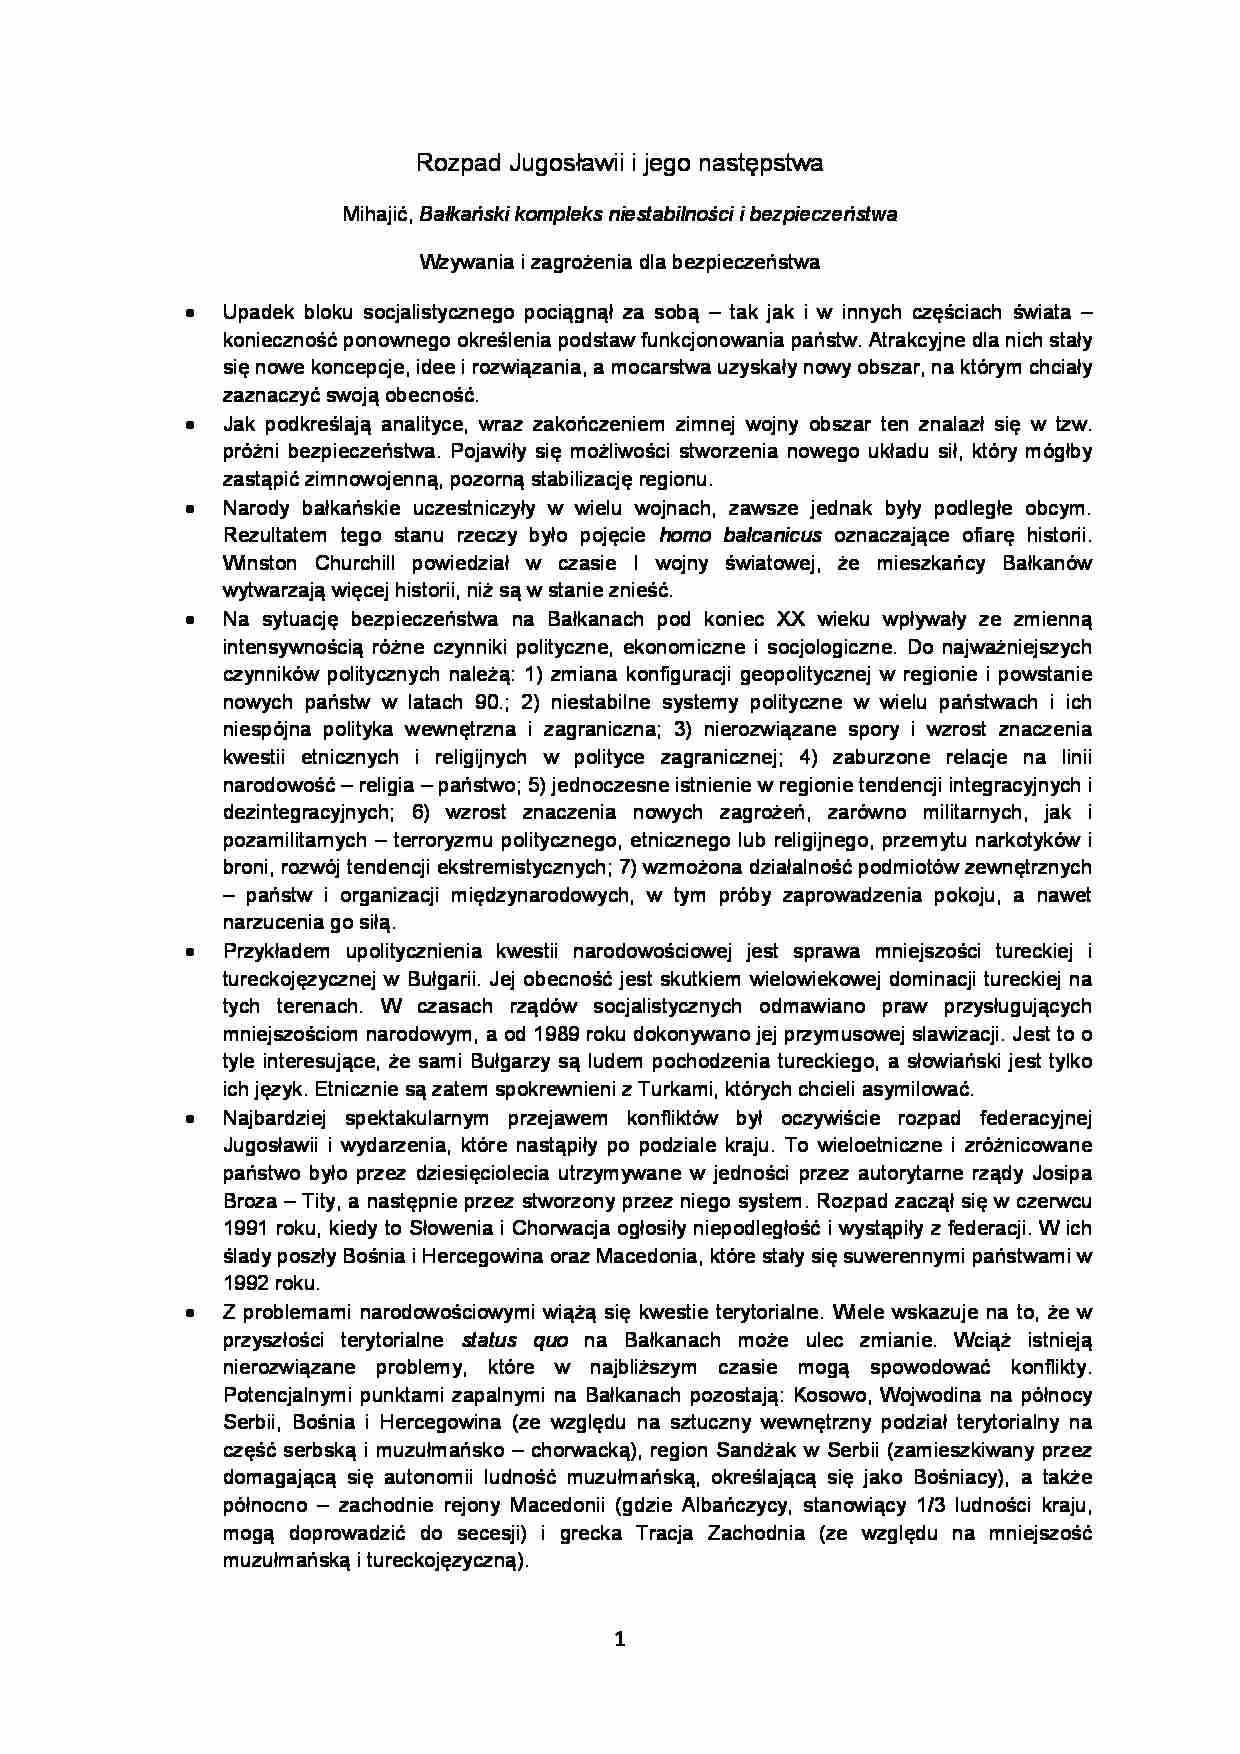 Rozpad Jugosławii i jego następstwa-opracowanie - strona 1